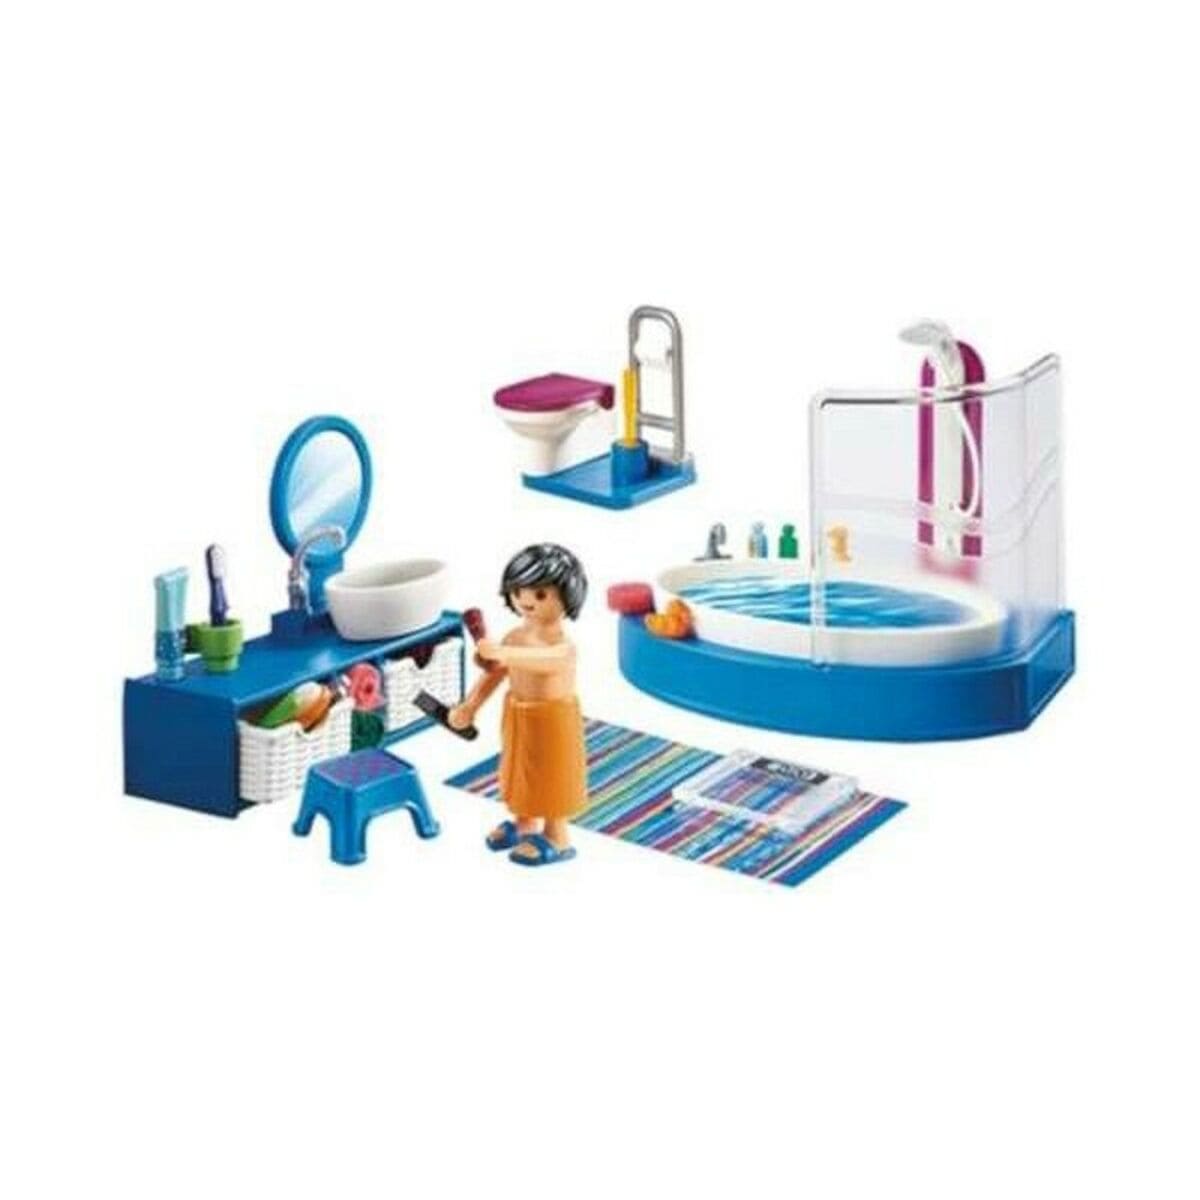 Playmobil Spielzeug | Kostüme > Spielzeug und Spiele > Puppen und Plüschtiere Playset Dollhouse Bathroom Playmobil 70211 Badezimmer (51 pcs)